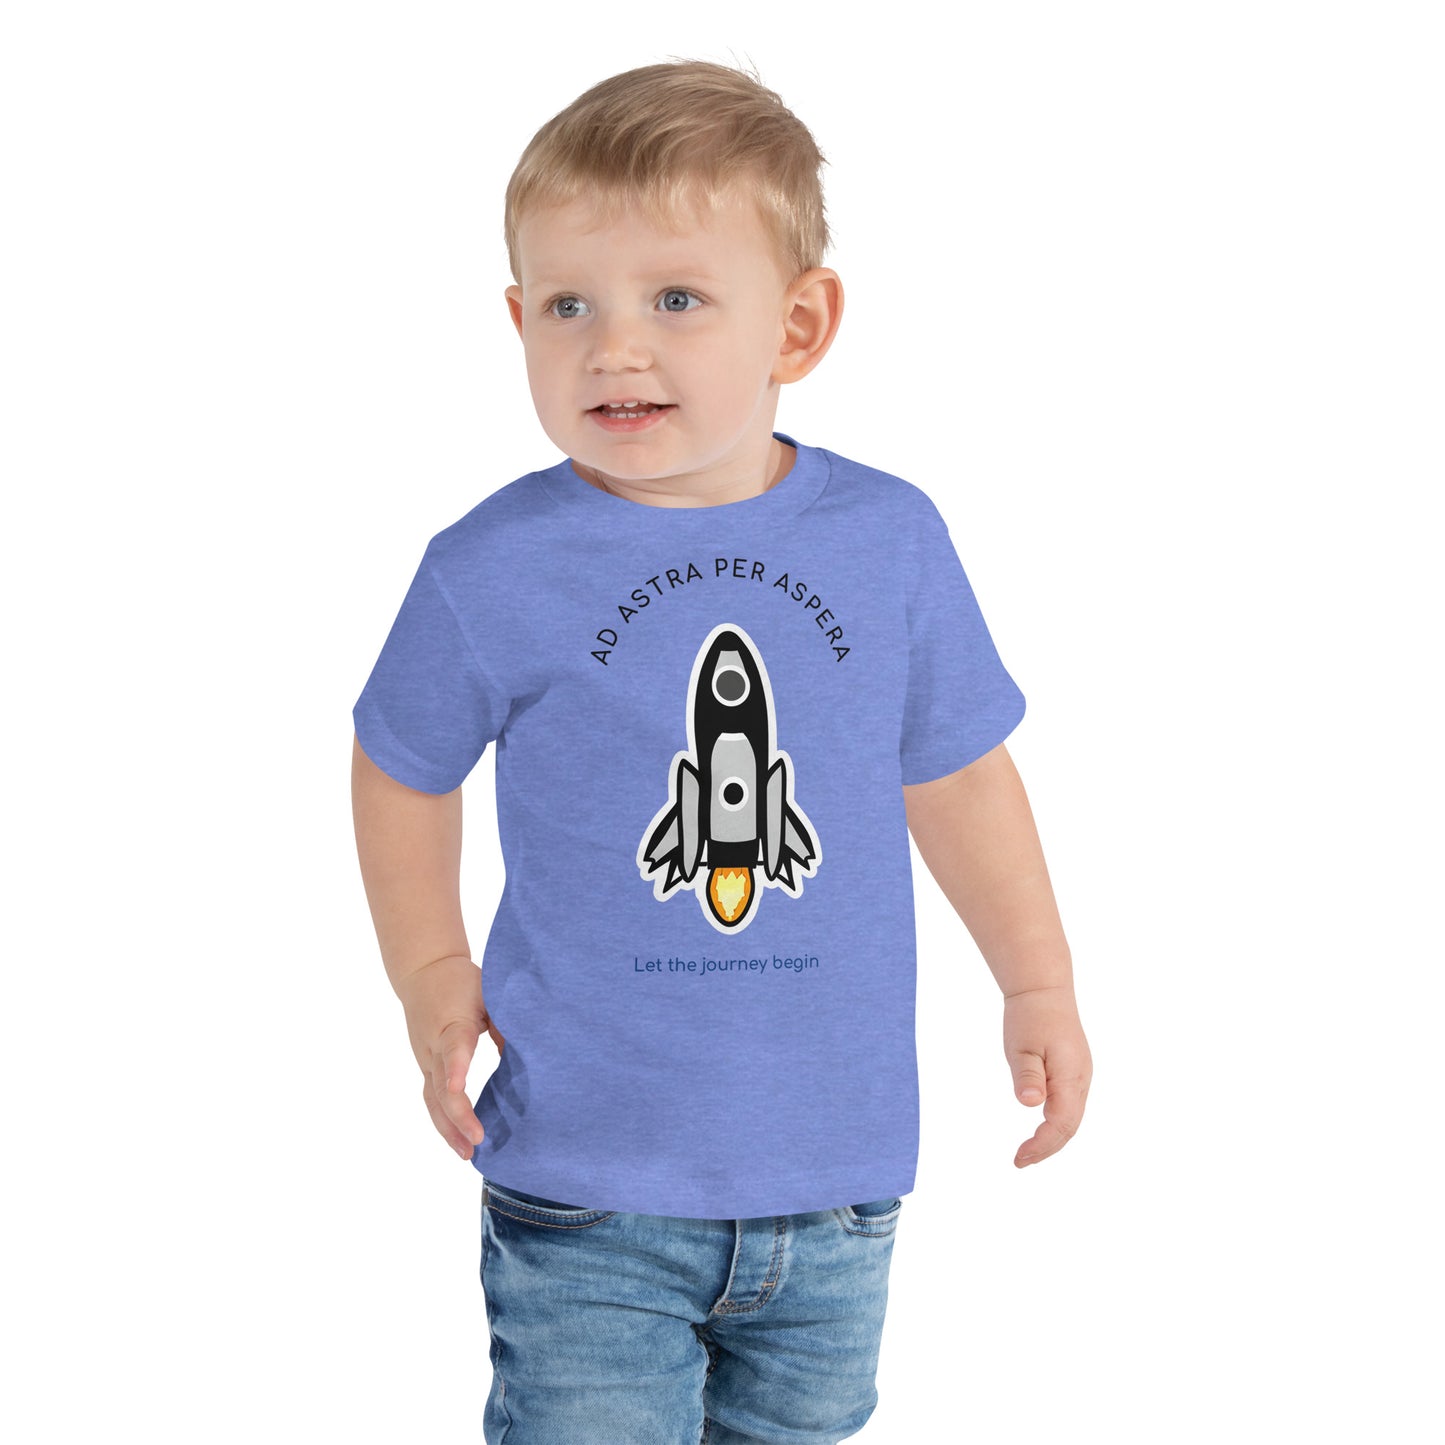 young boy wearing blue rocketship shirt